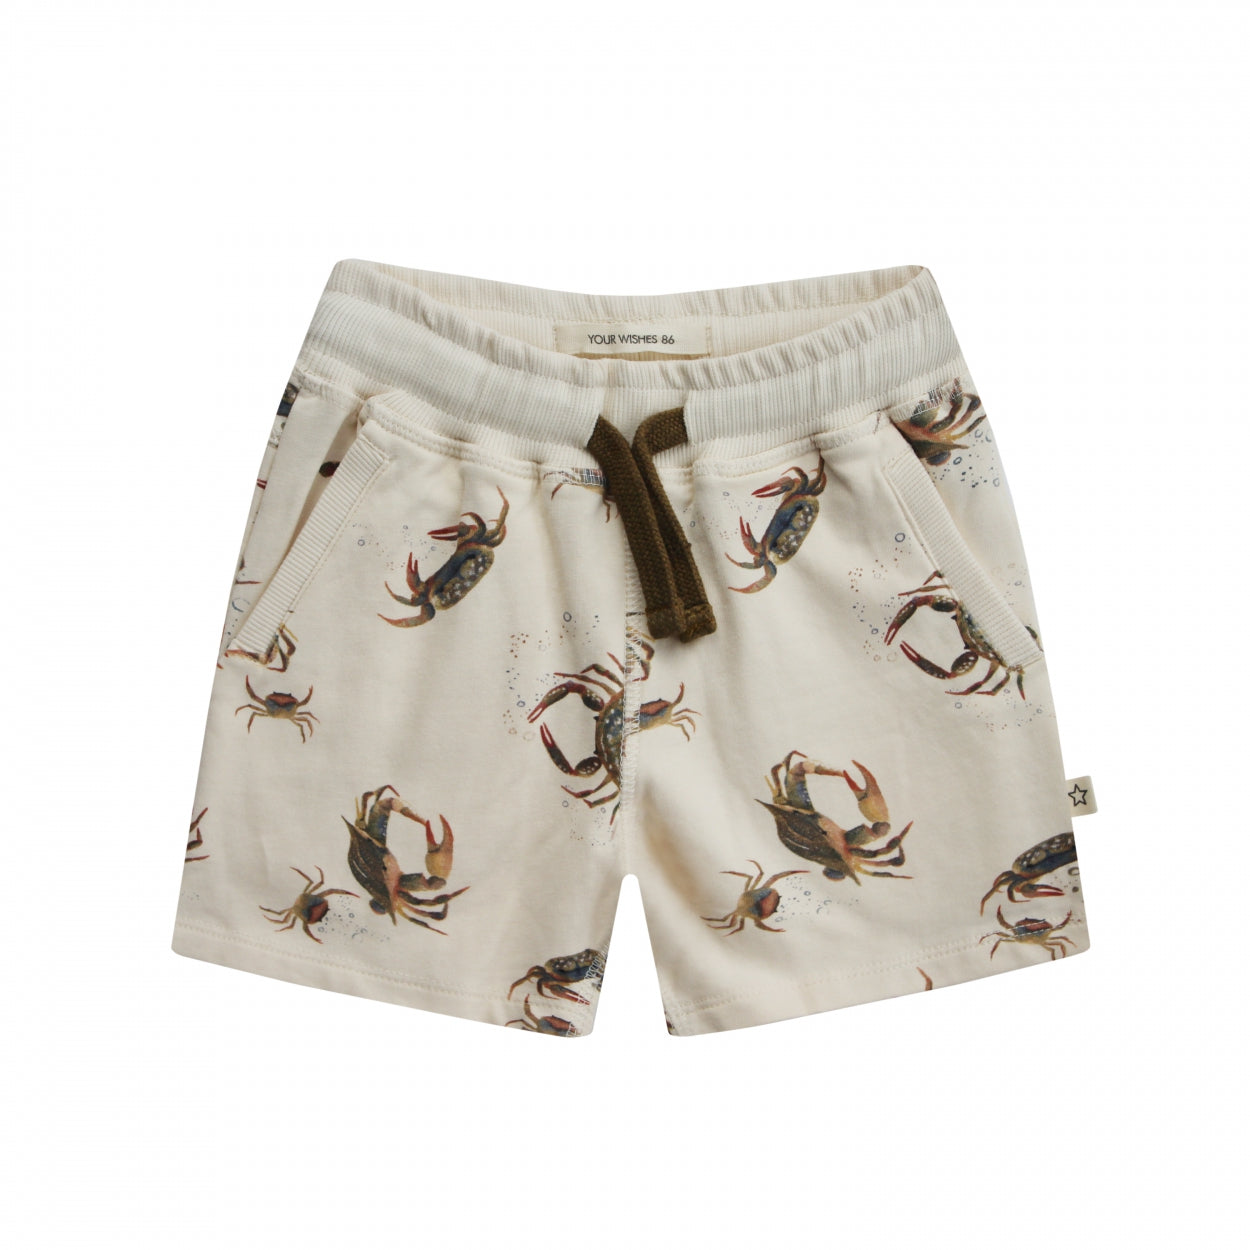 Jongens Shorts Crabs | Dudley van Your Wishes in de kleur Multicolor in maat 92.